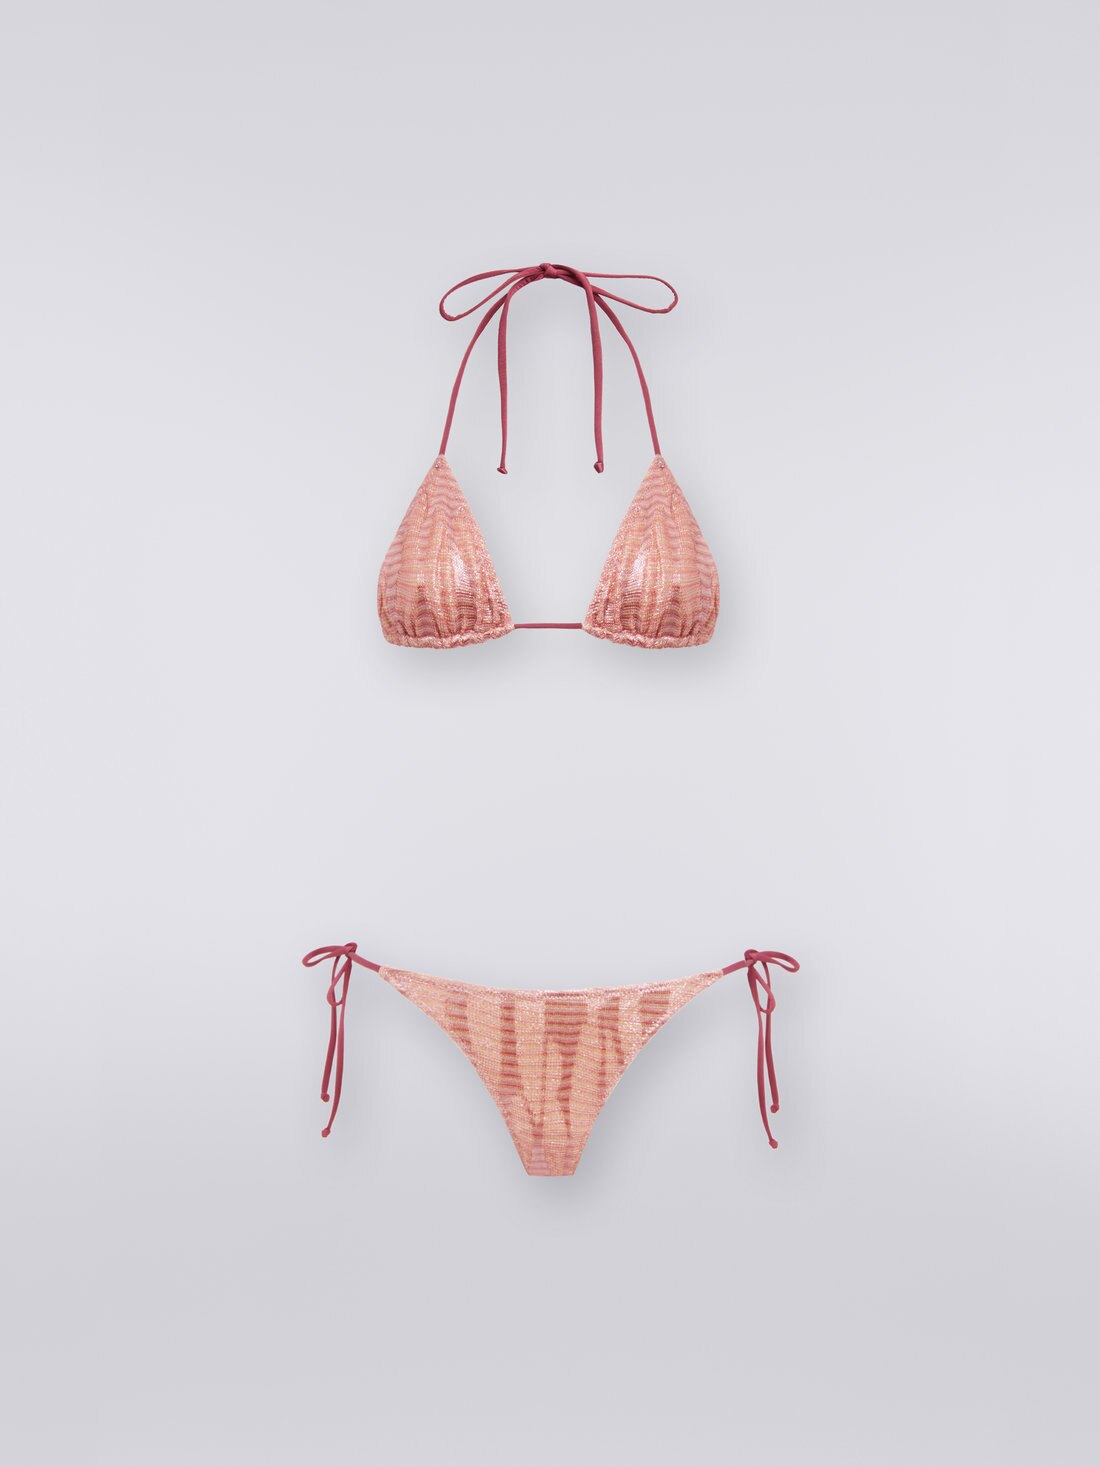 Jacquard viscose knit bikini, Pink - MC22WP00BT006OS30CH - 0